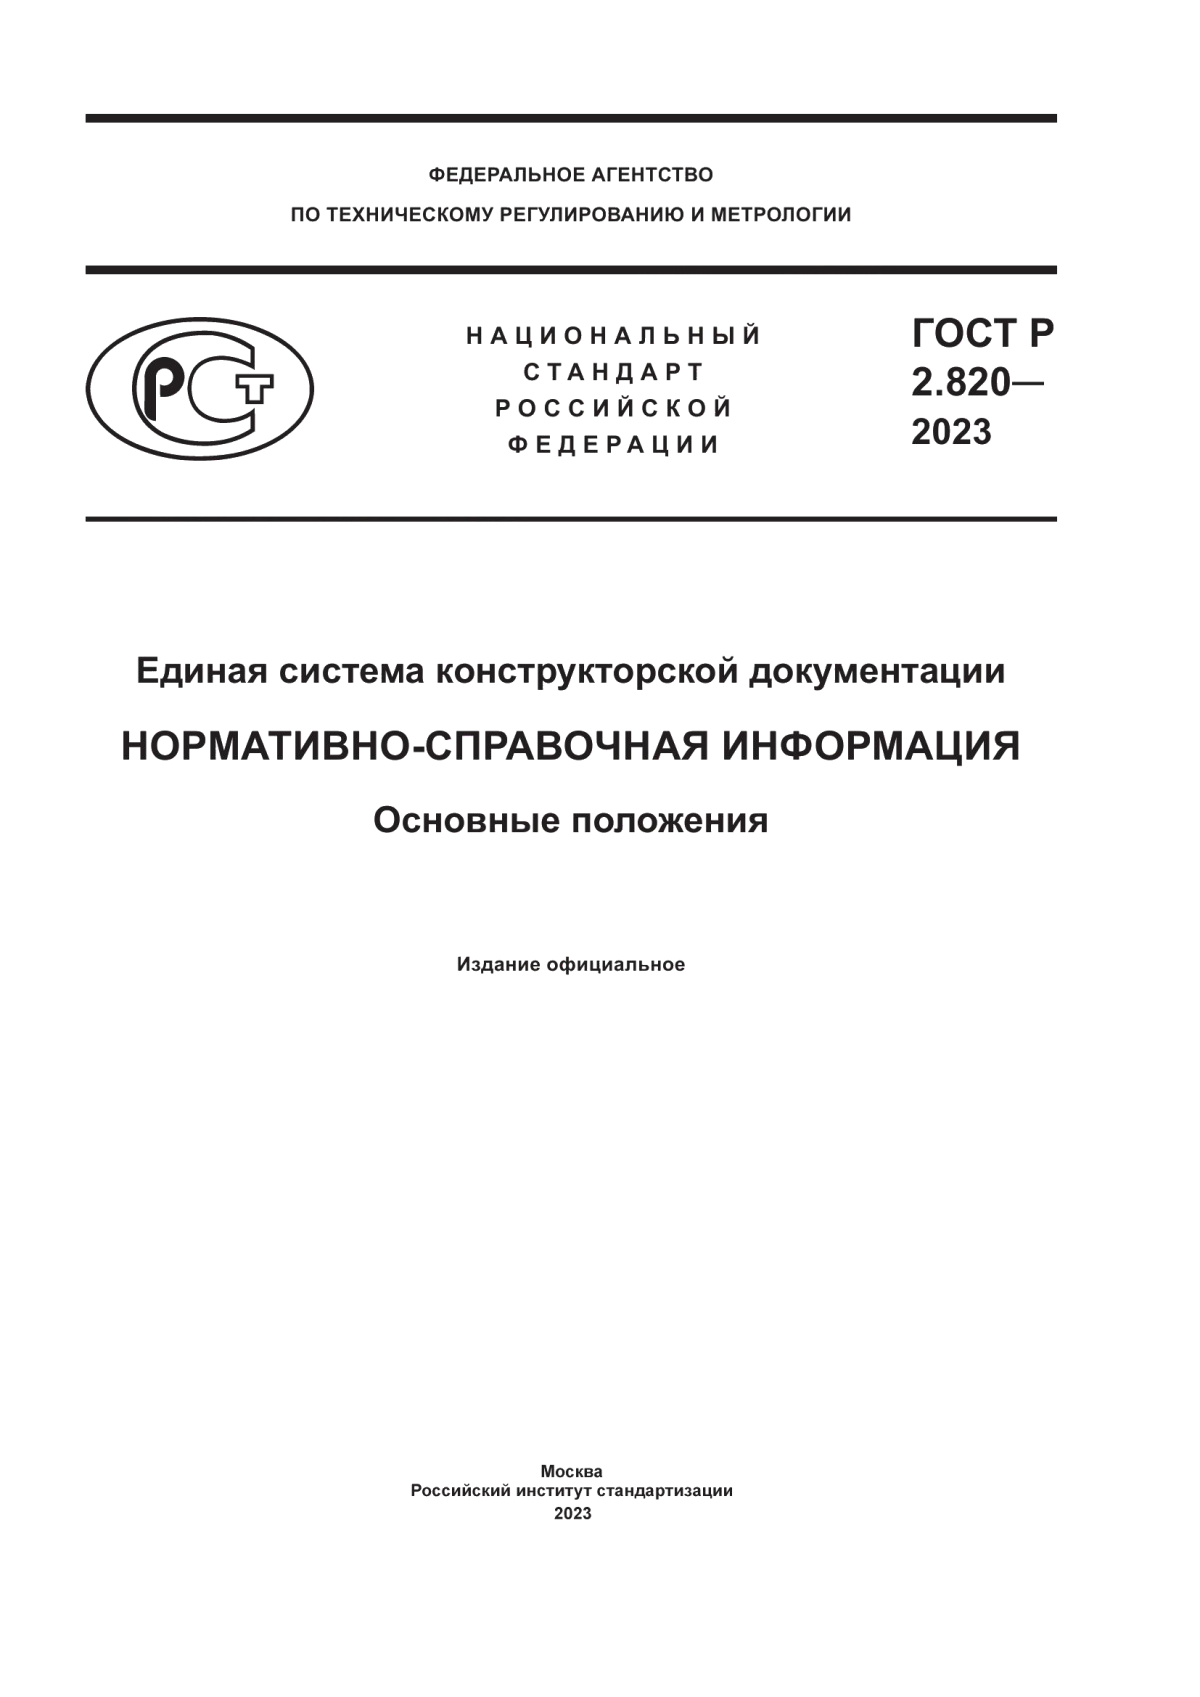 ГОСТ Р 2.820-2023 Единая система конструкторской документации. Нормативно-справочная информация. Основные положения